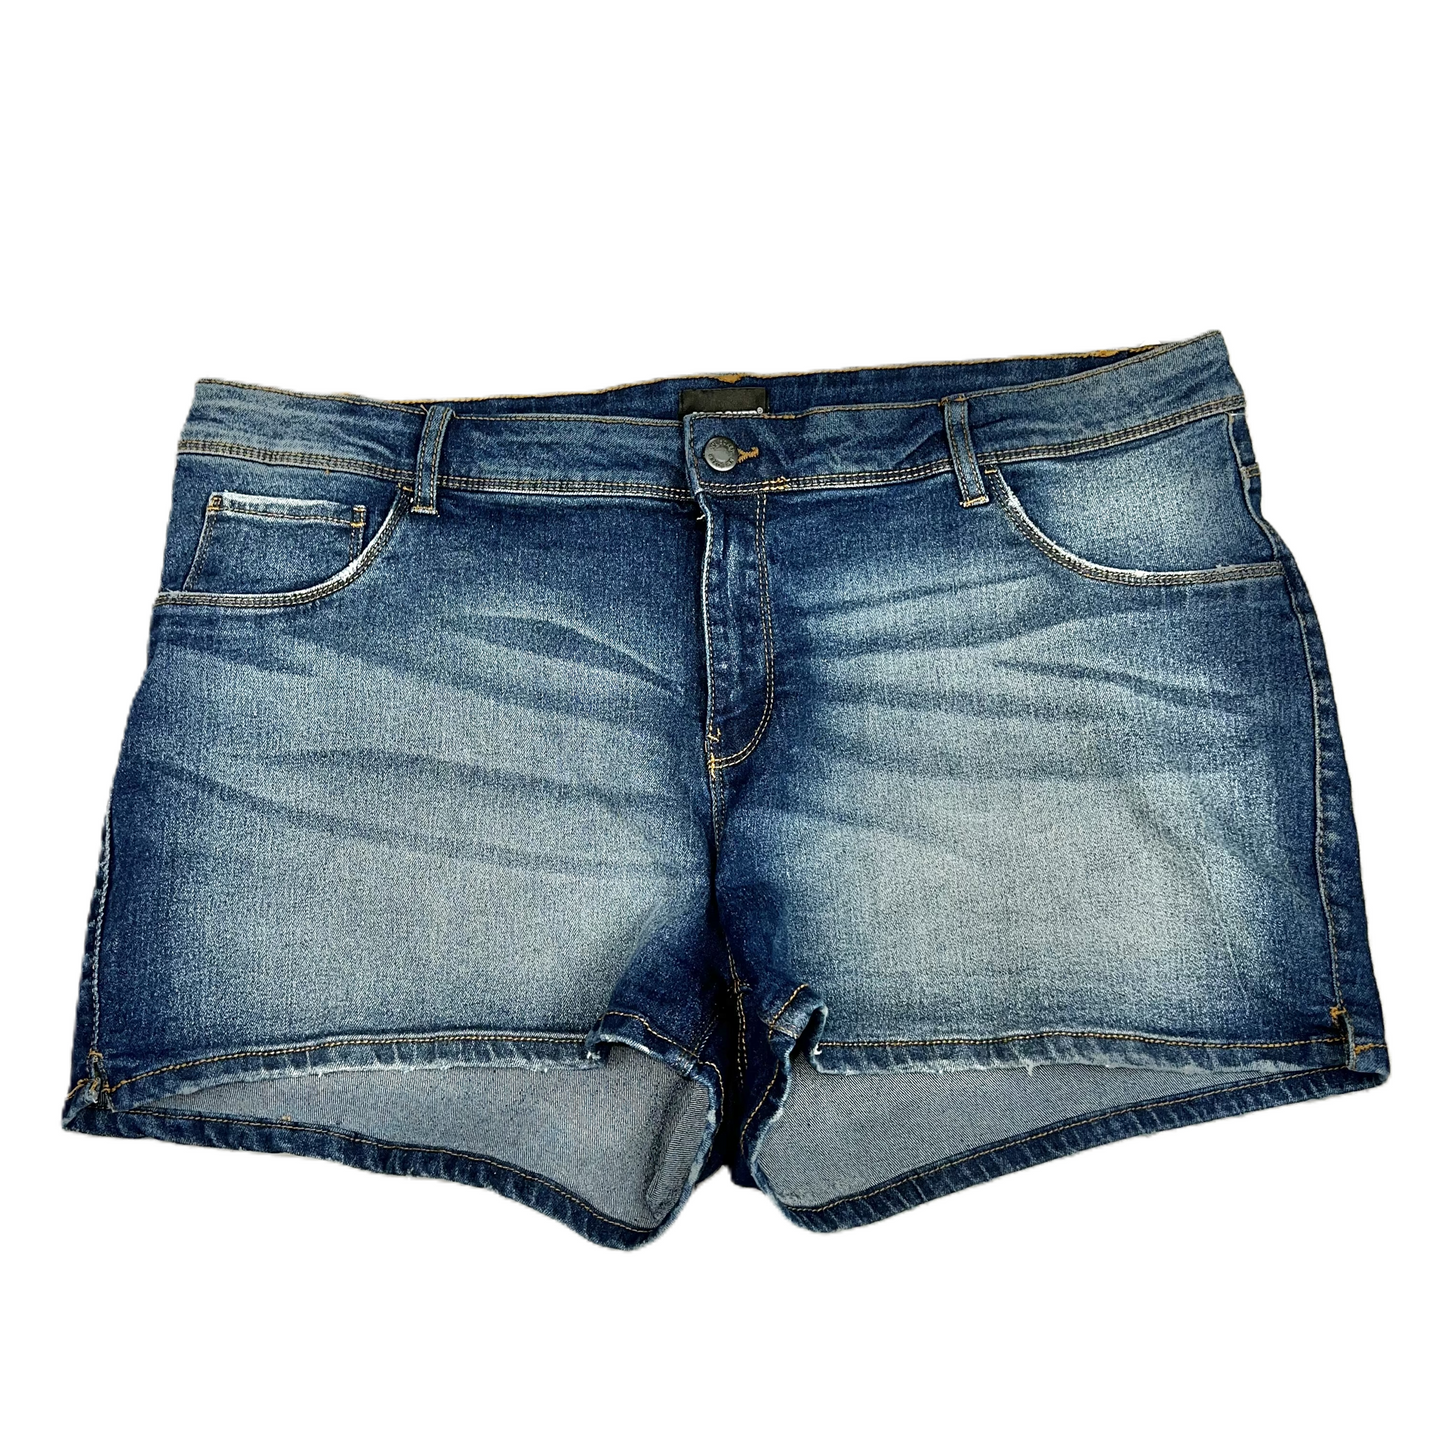 Blue Denim Shorts By Joe Boxer, Size: 18w